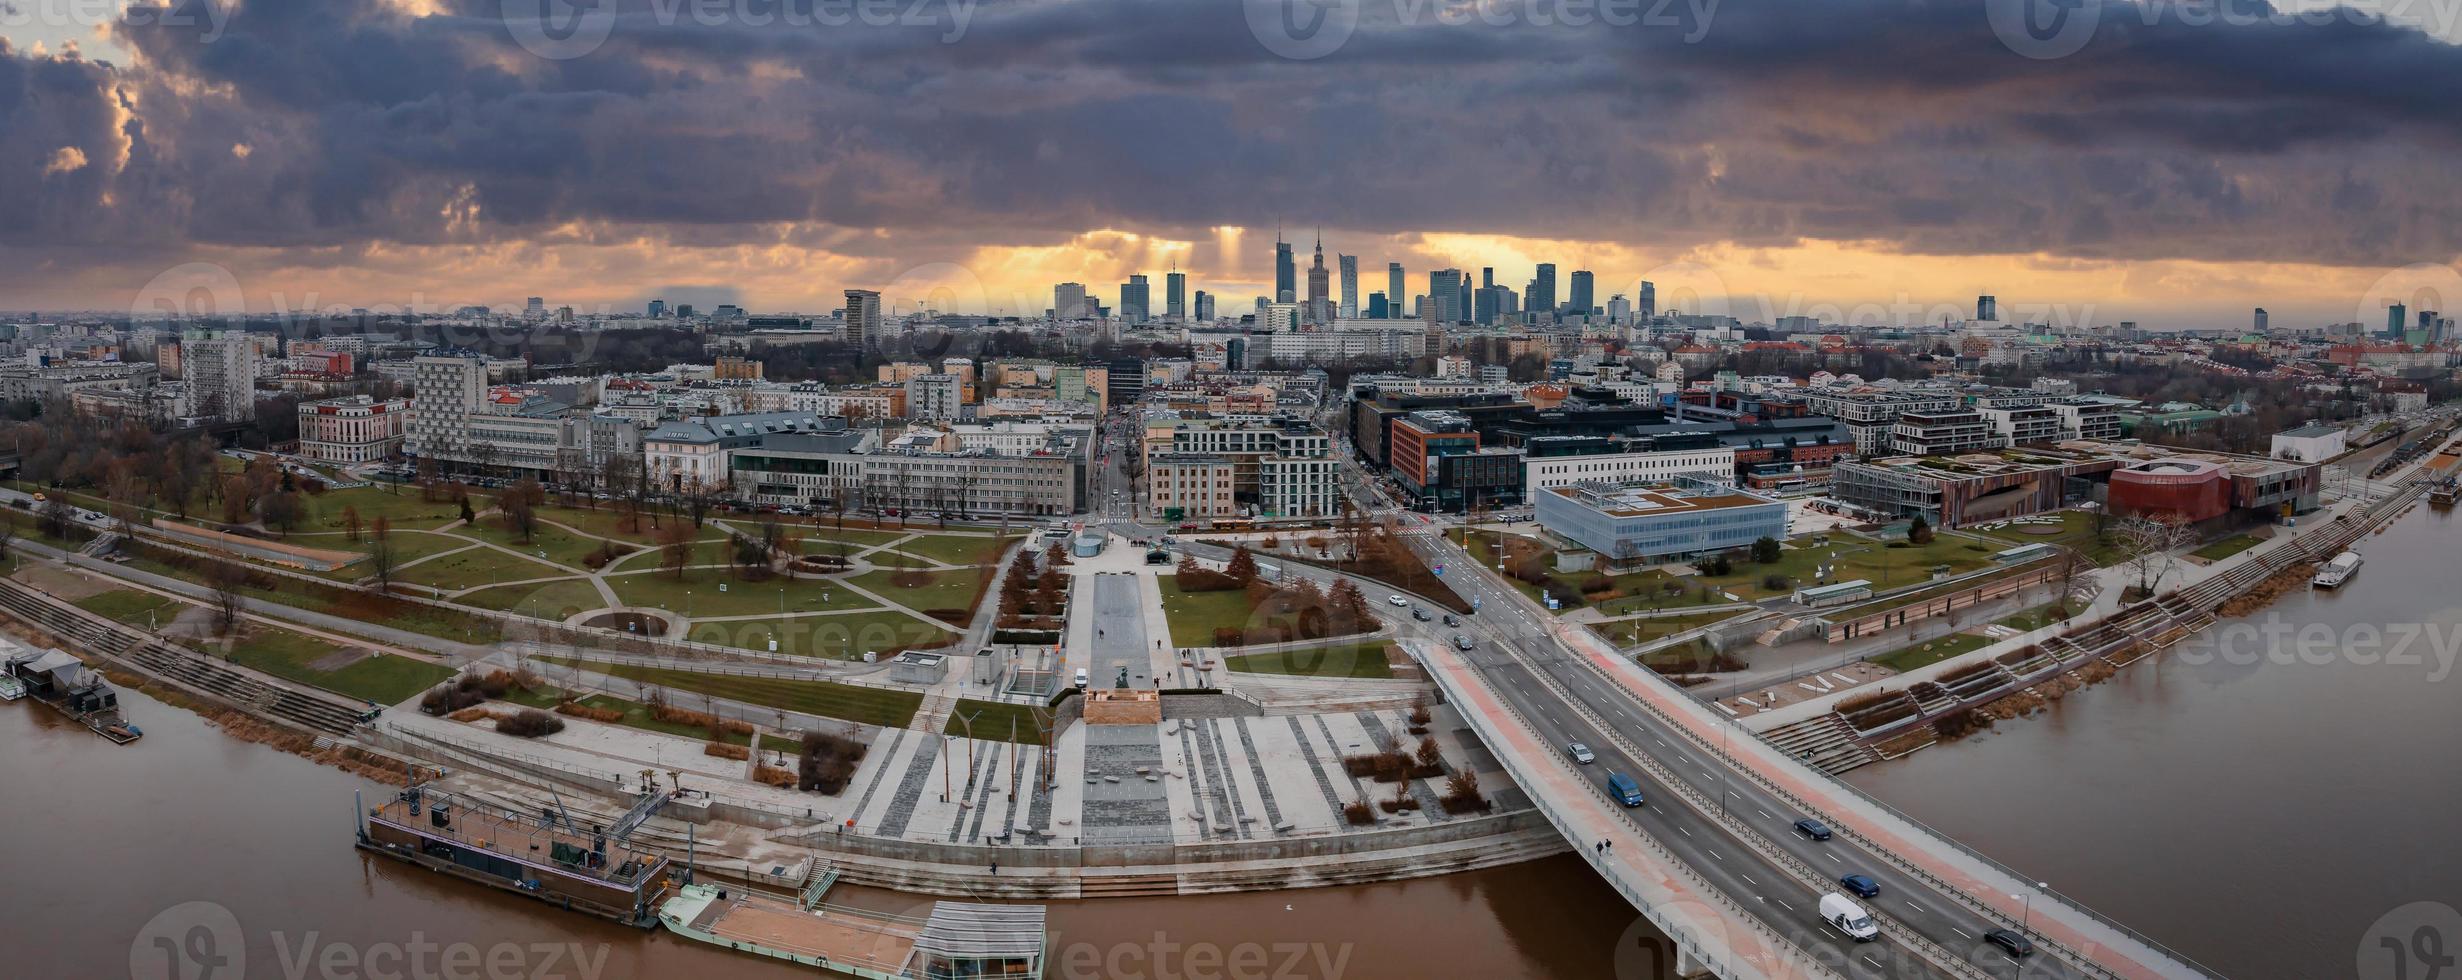 Panoramablick aus der Luft auf die modernen Wolkenkratzer und das Geschäftszentrum in Warschau. foto